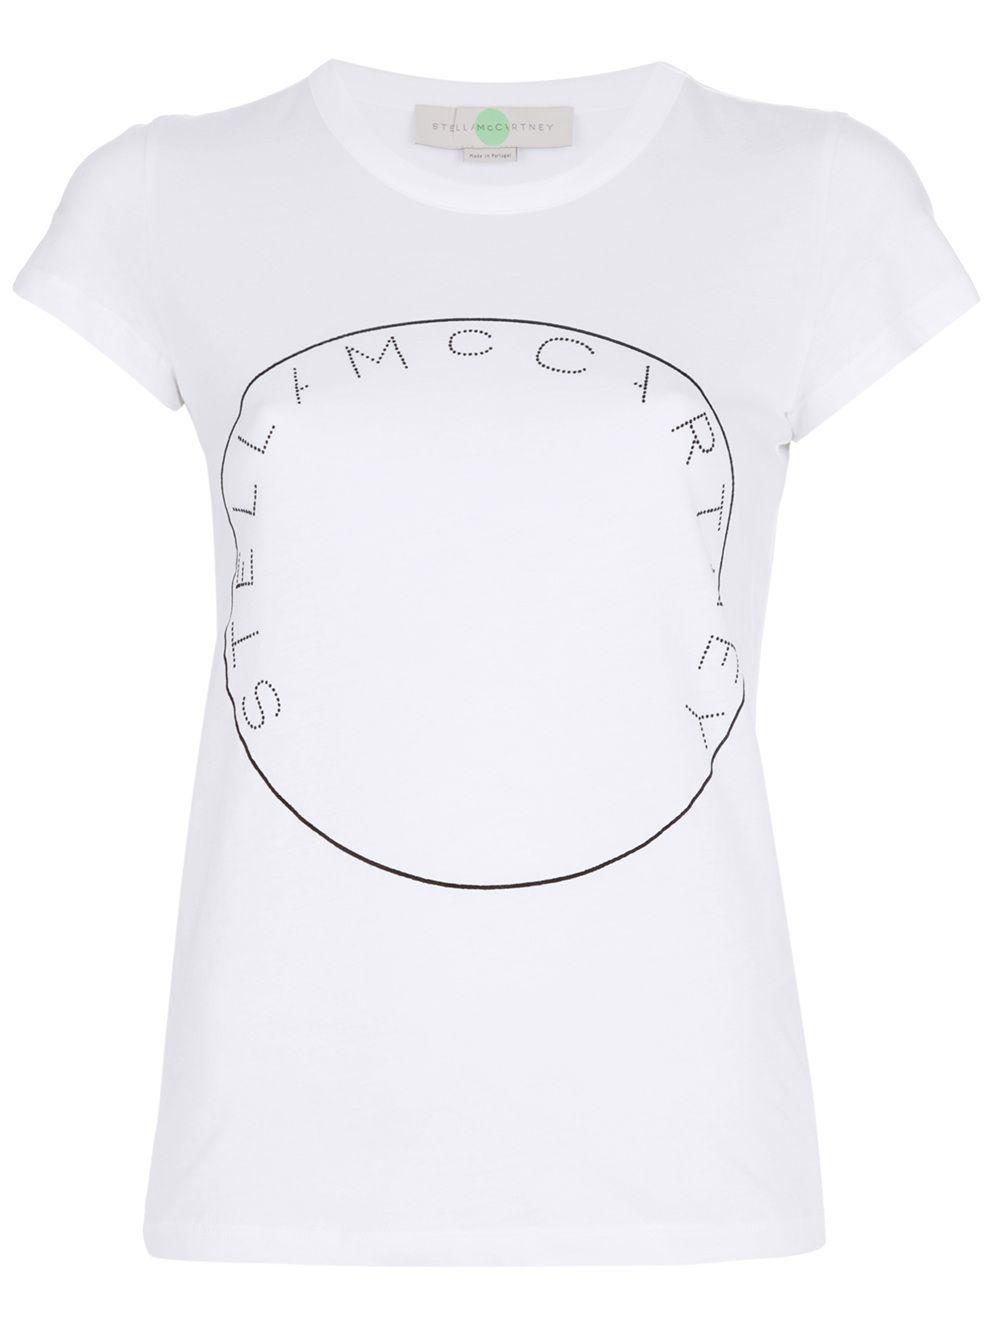 Stella McCartney Logo - Stella McCartney Logo T-Shirt in White - Lyst